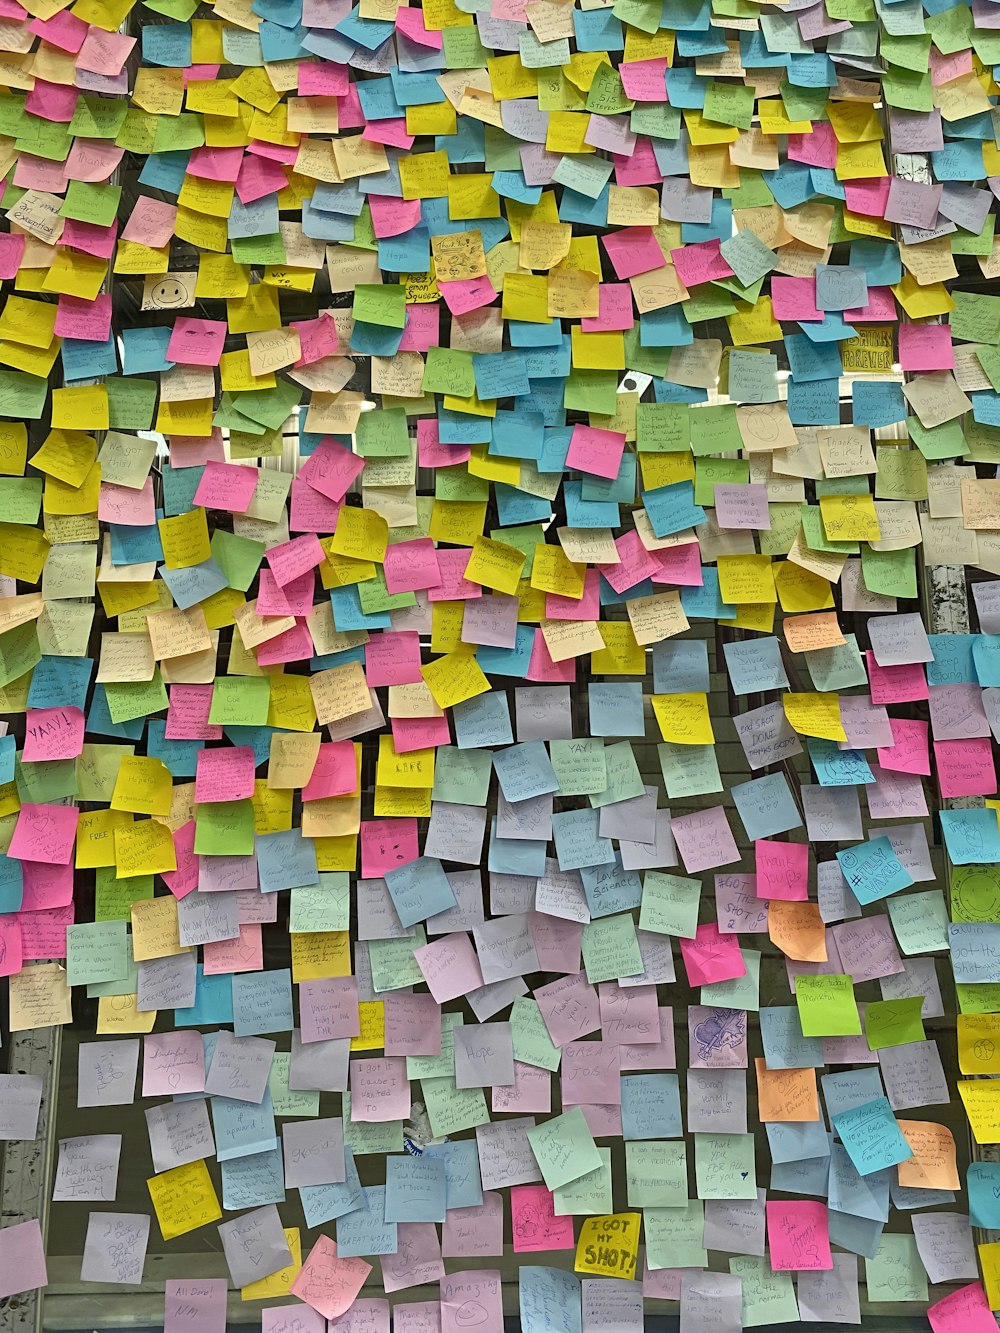 벽에 많은 양의 포스트잇 메모